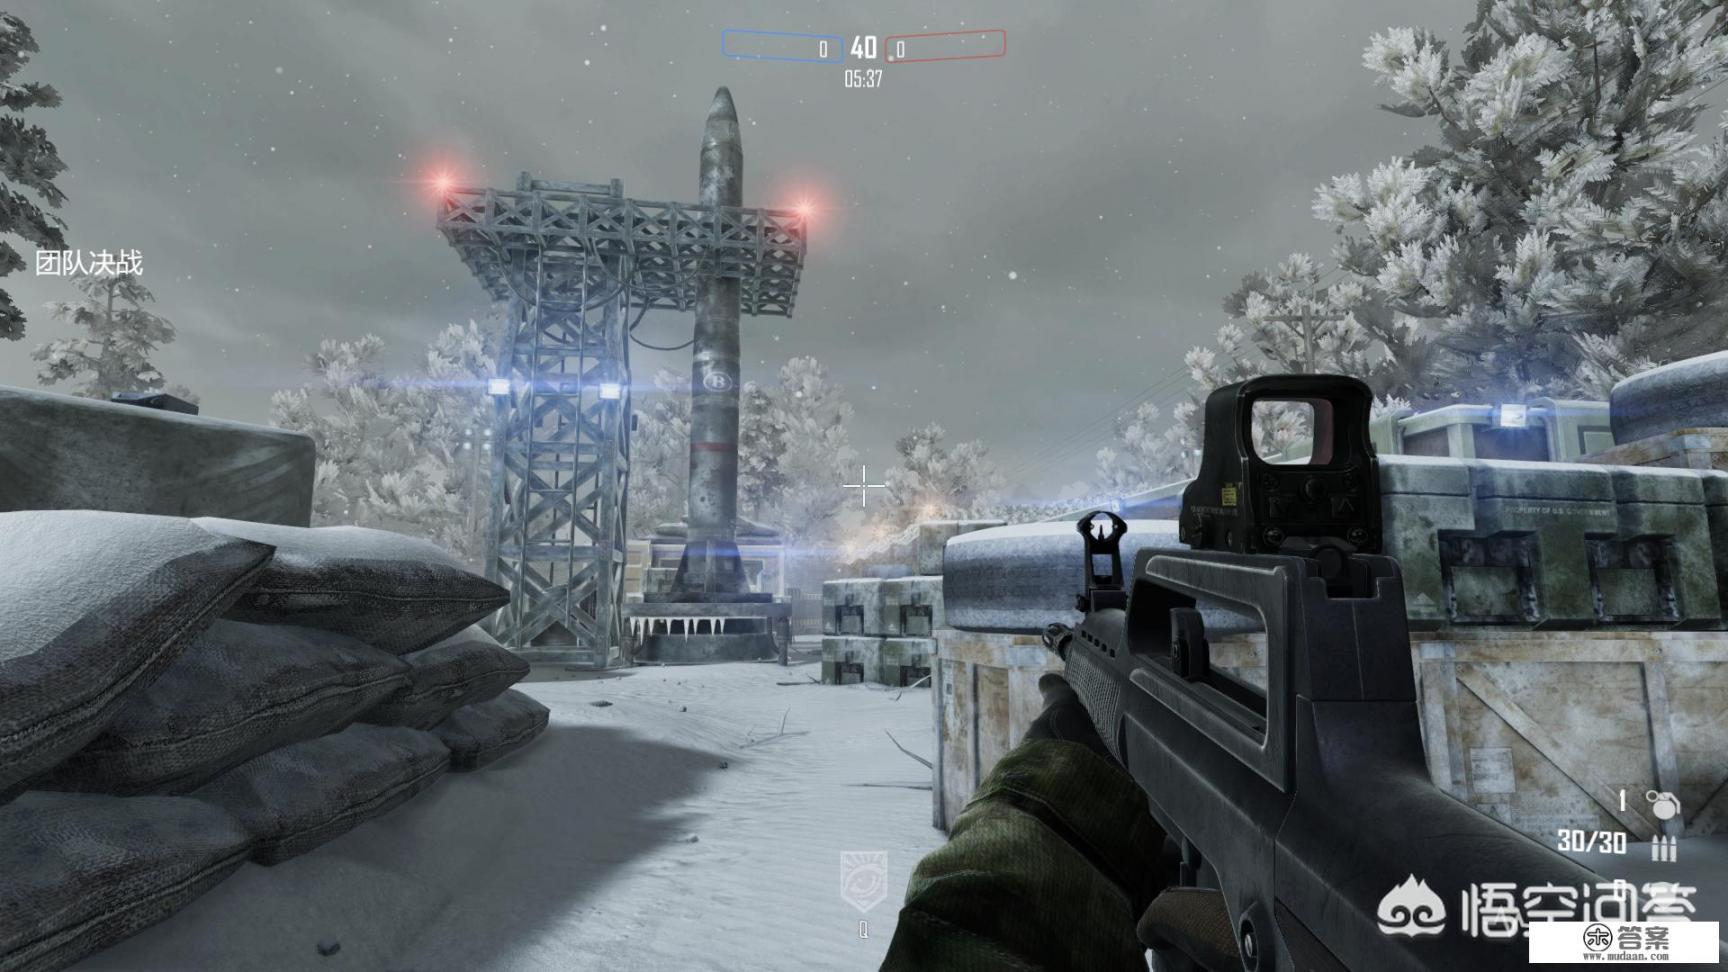 国产FPS军事游戏《强军》上架steam，是否可以视为国产军事游戏崛起的一个征兆